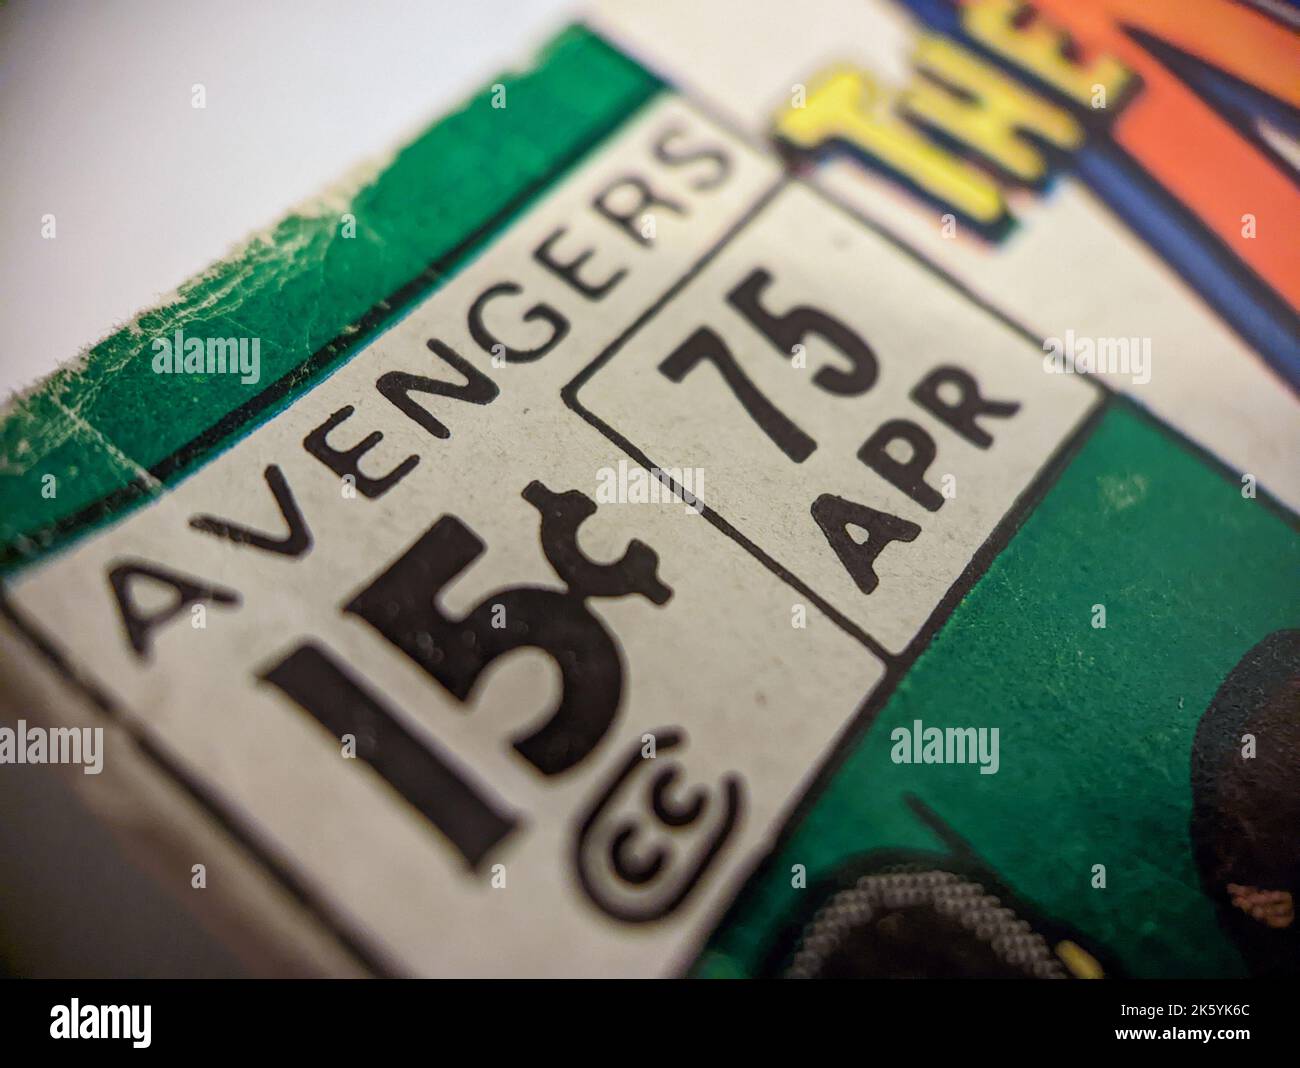 New York City, USA - Oktober 2022: Eine Nahaufnahme des alten Comicheks Marvel Avengers #75, das ursprünglich für 15 Cent verkauft wurde, wird in einem o angezeigt Stockfoto